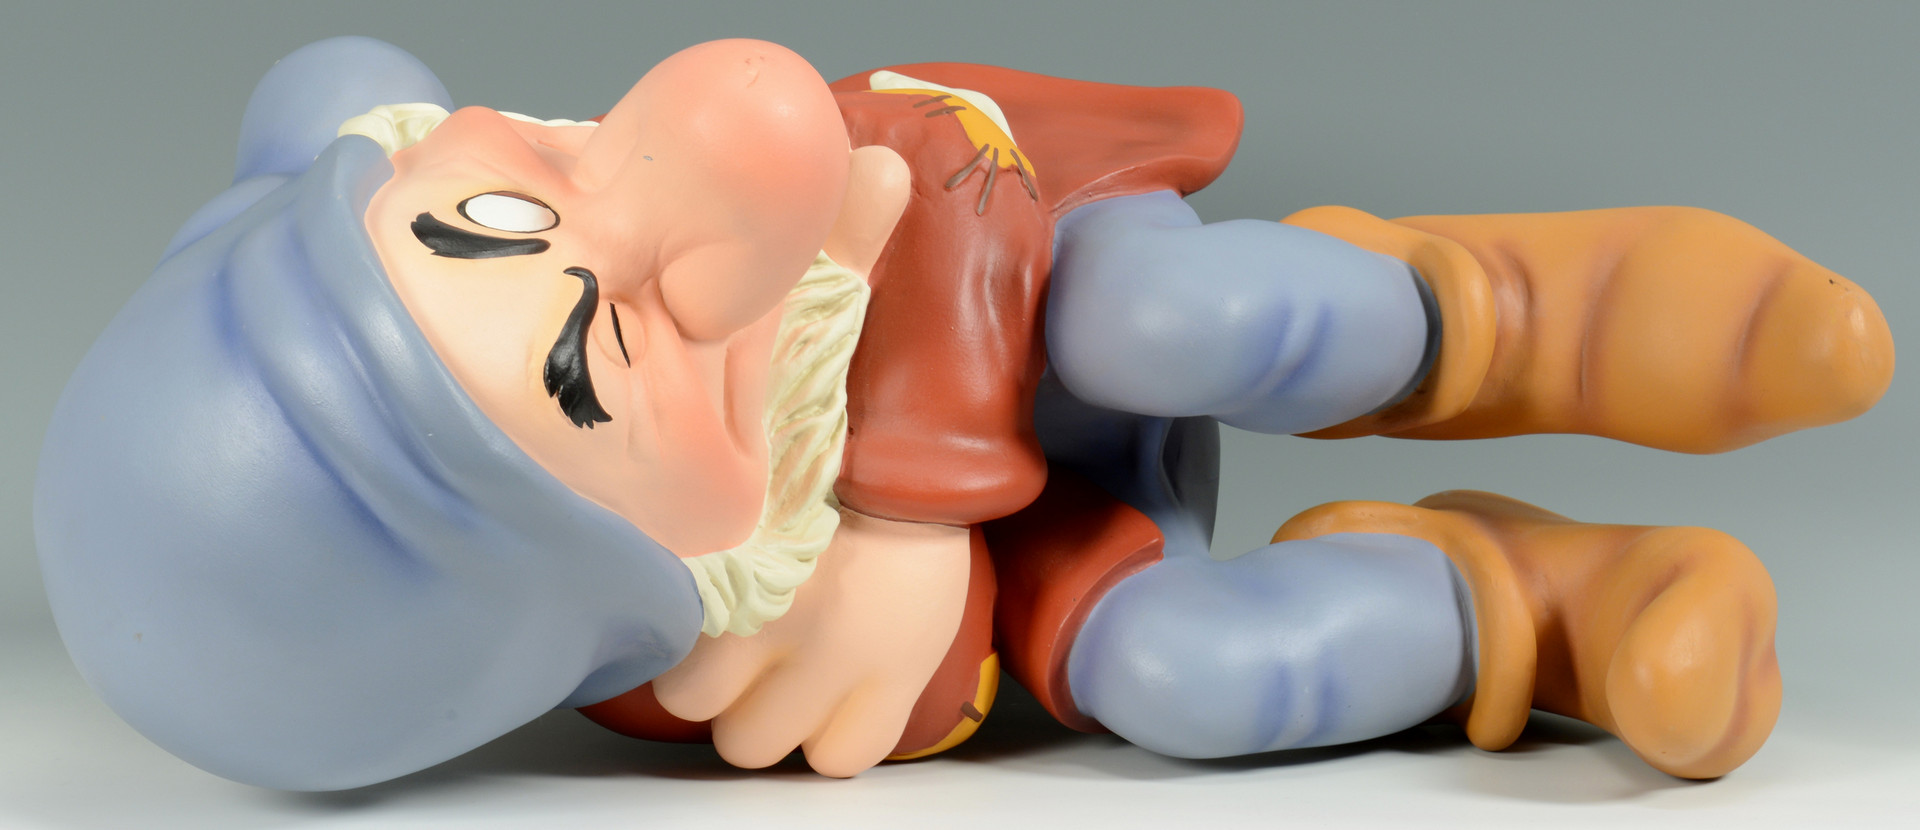 Lot 908: Oversized Disney Grumpy Figure